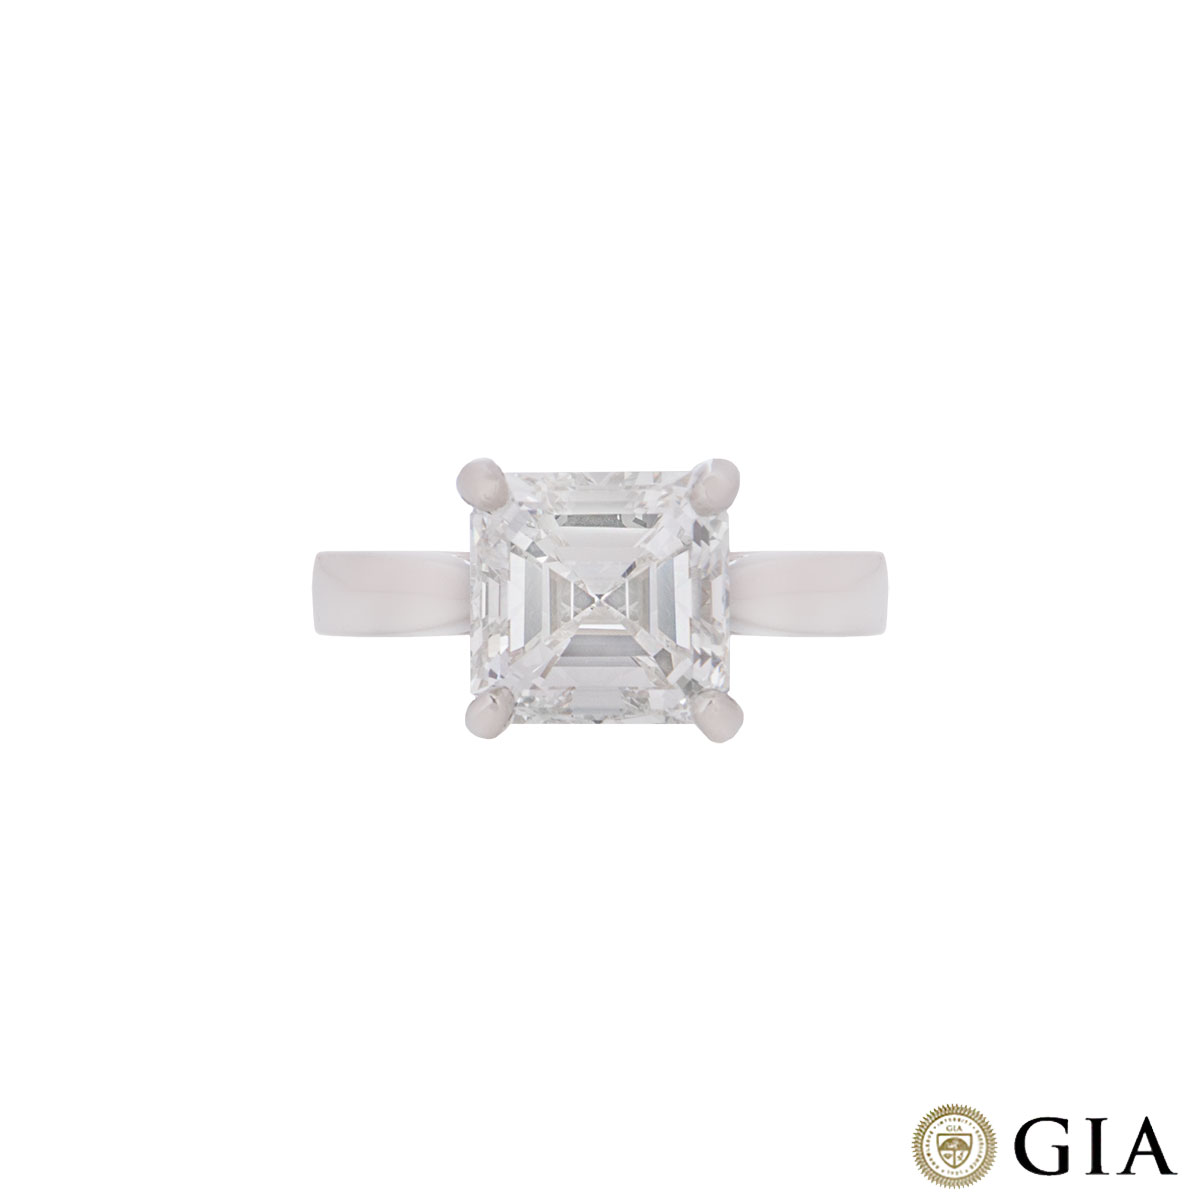 Platinum Asscher Cut Diamond Ring 3.52ct H/VVS2